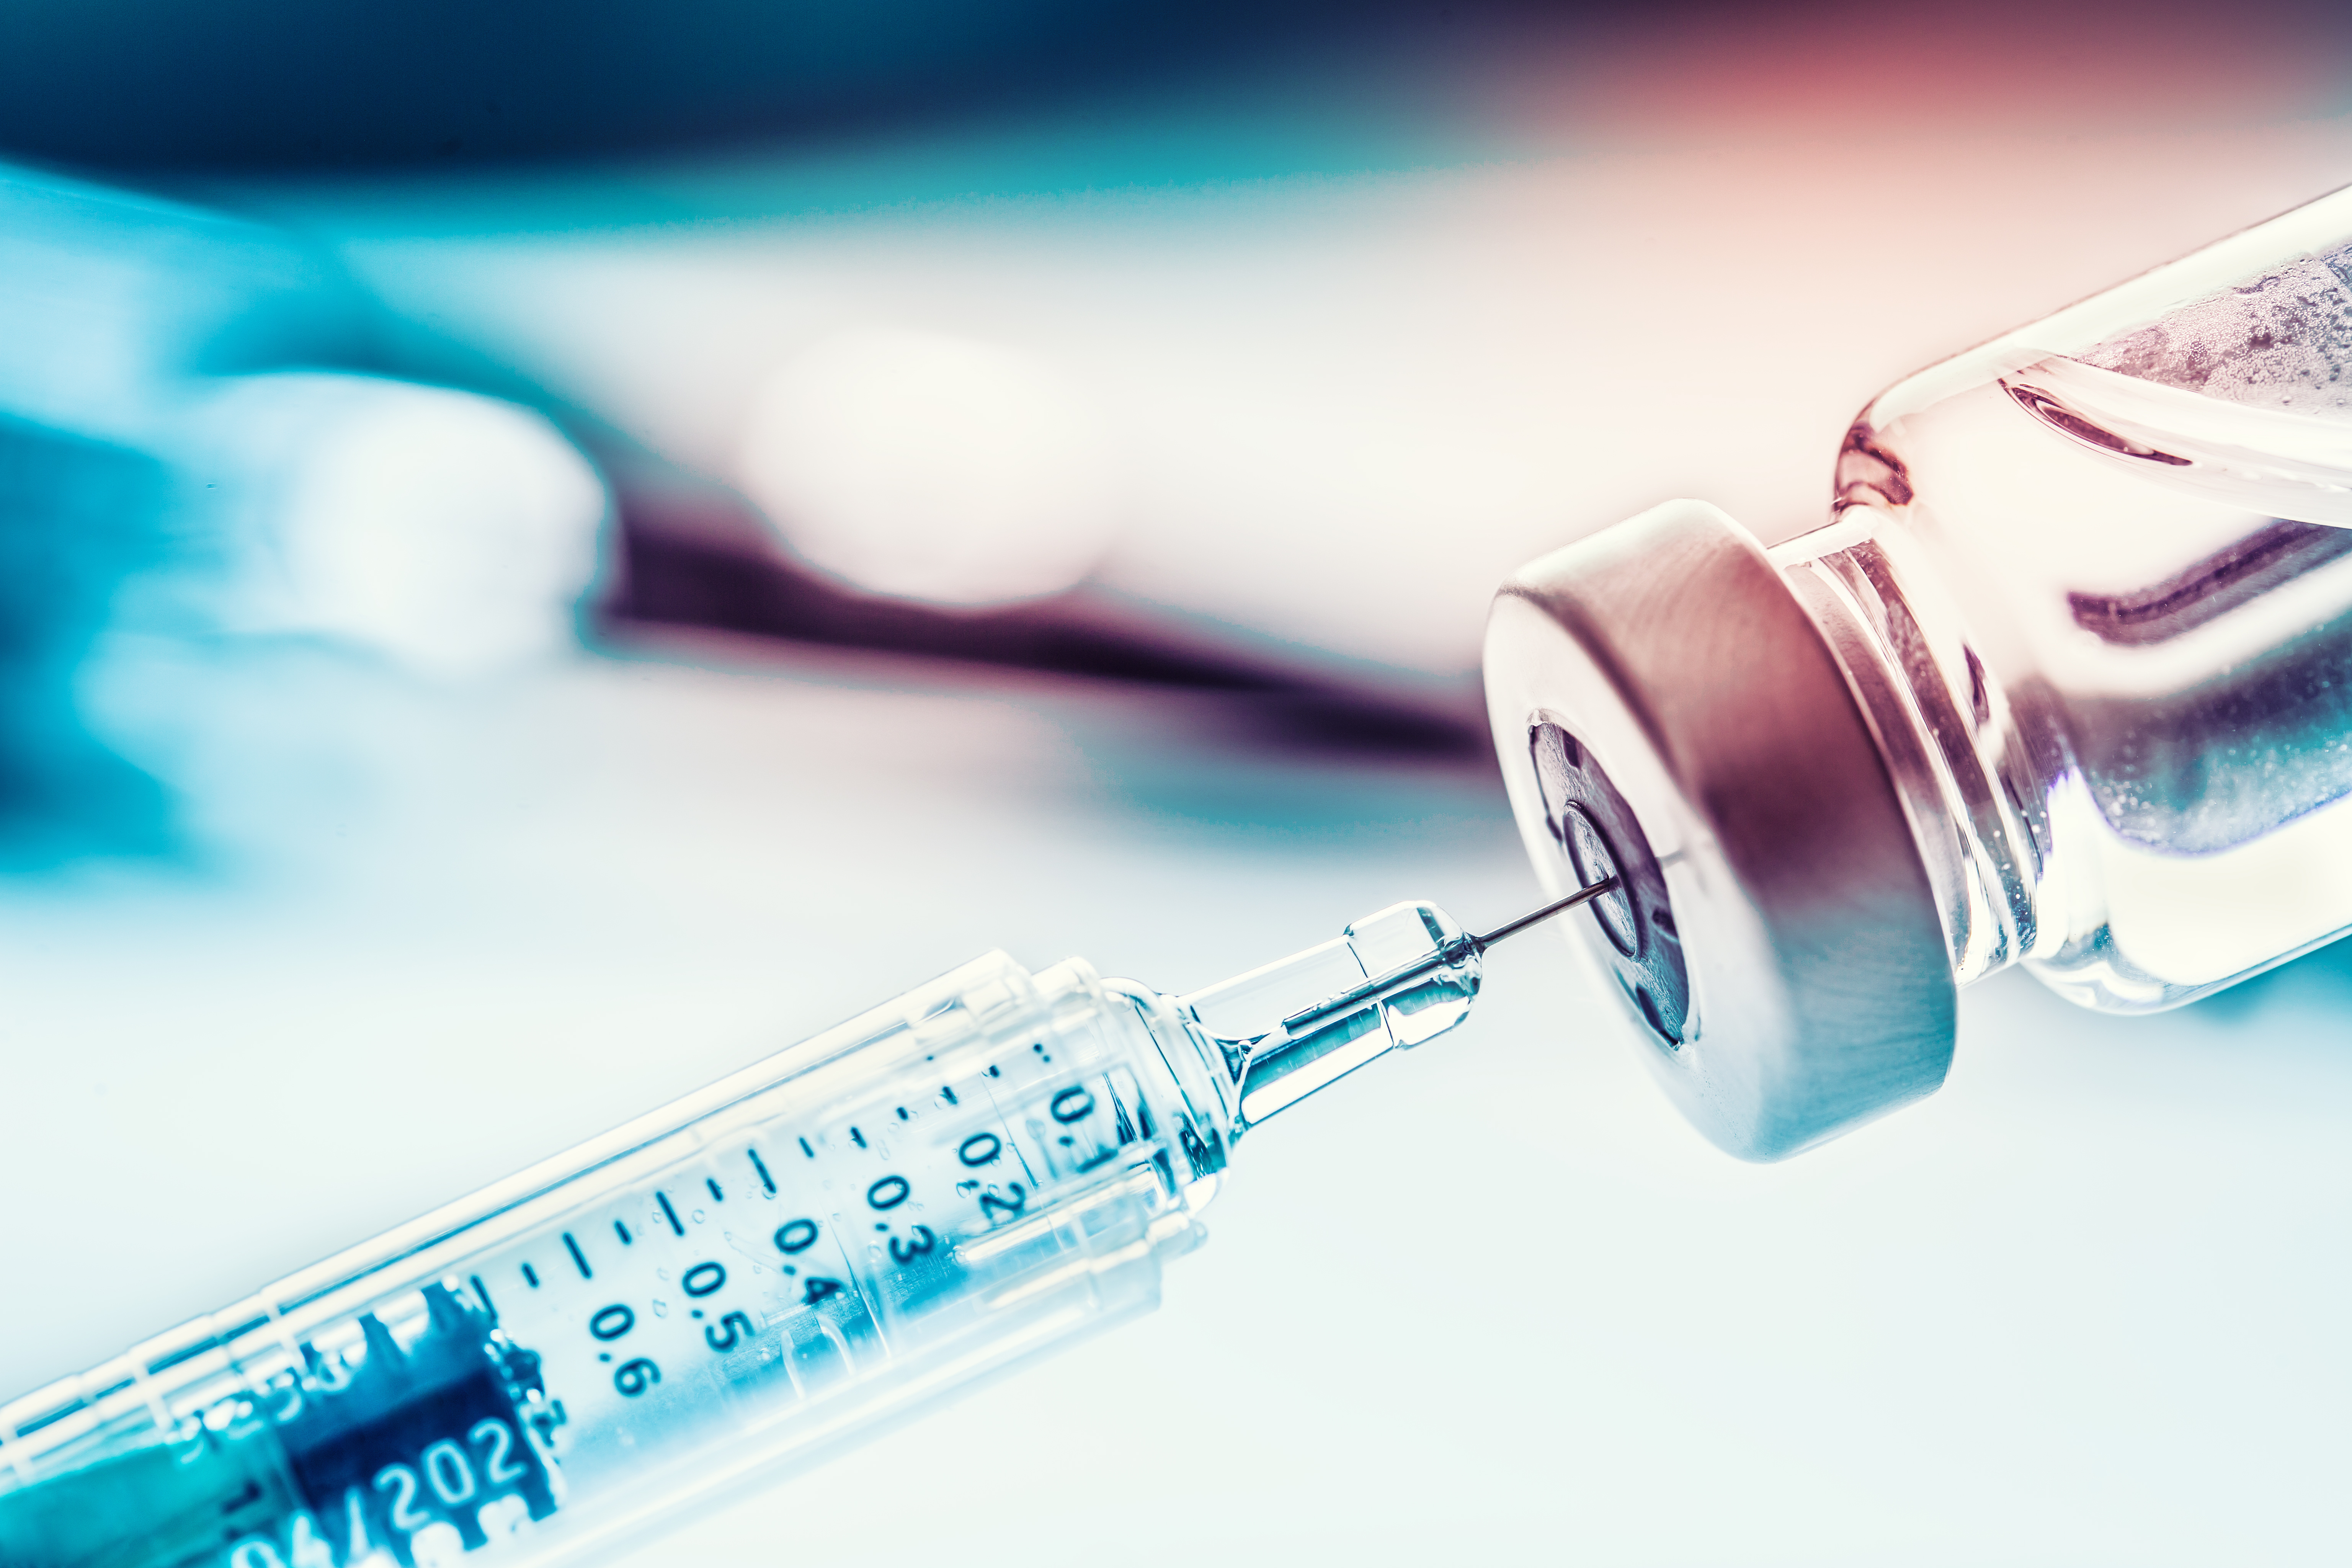 Relatório Especial 19/2022: Aquisição de vacinas contra a COVID-19 pela UE - Doses suficientes após dificuldades iniciais, mas avaliação insuficiente do desempenho do processo